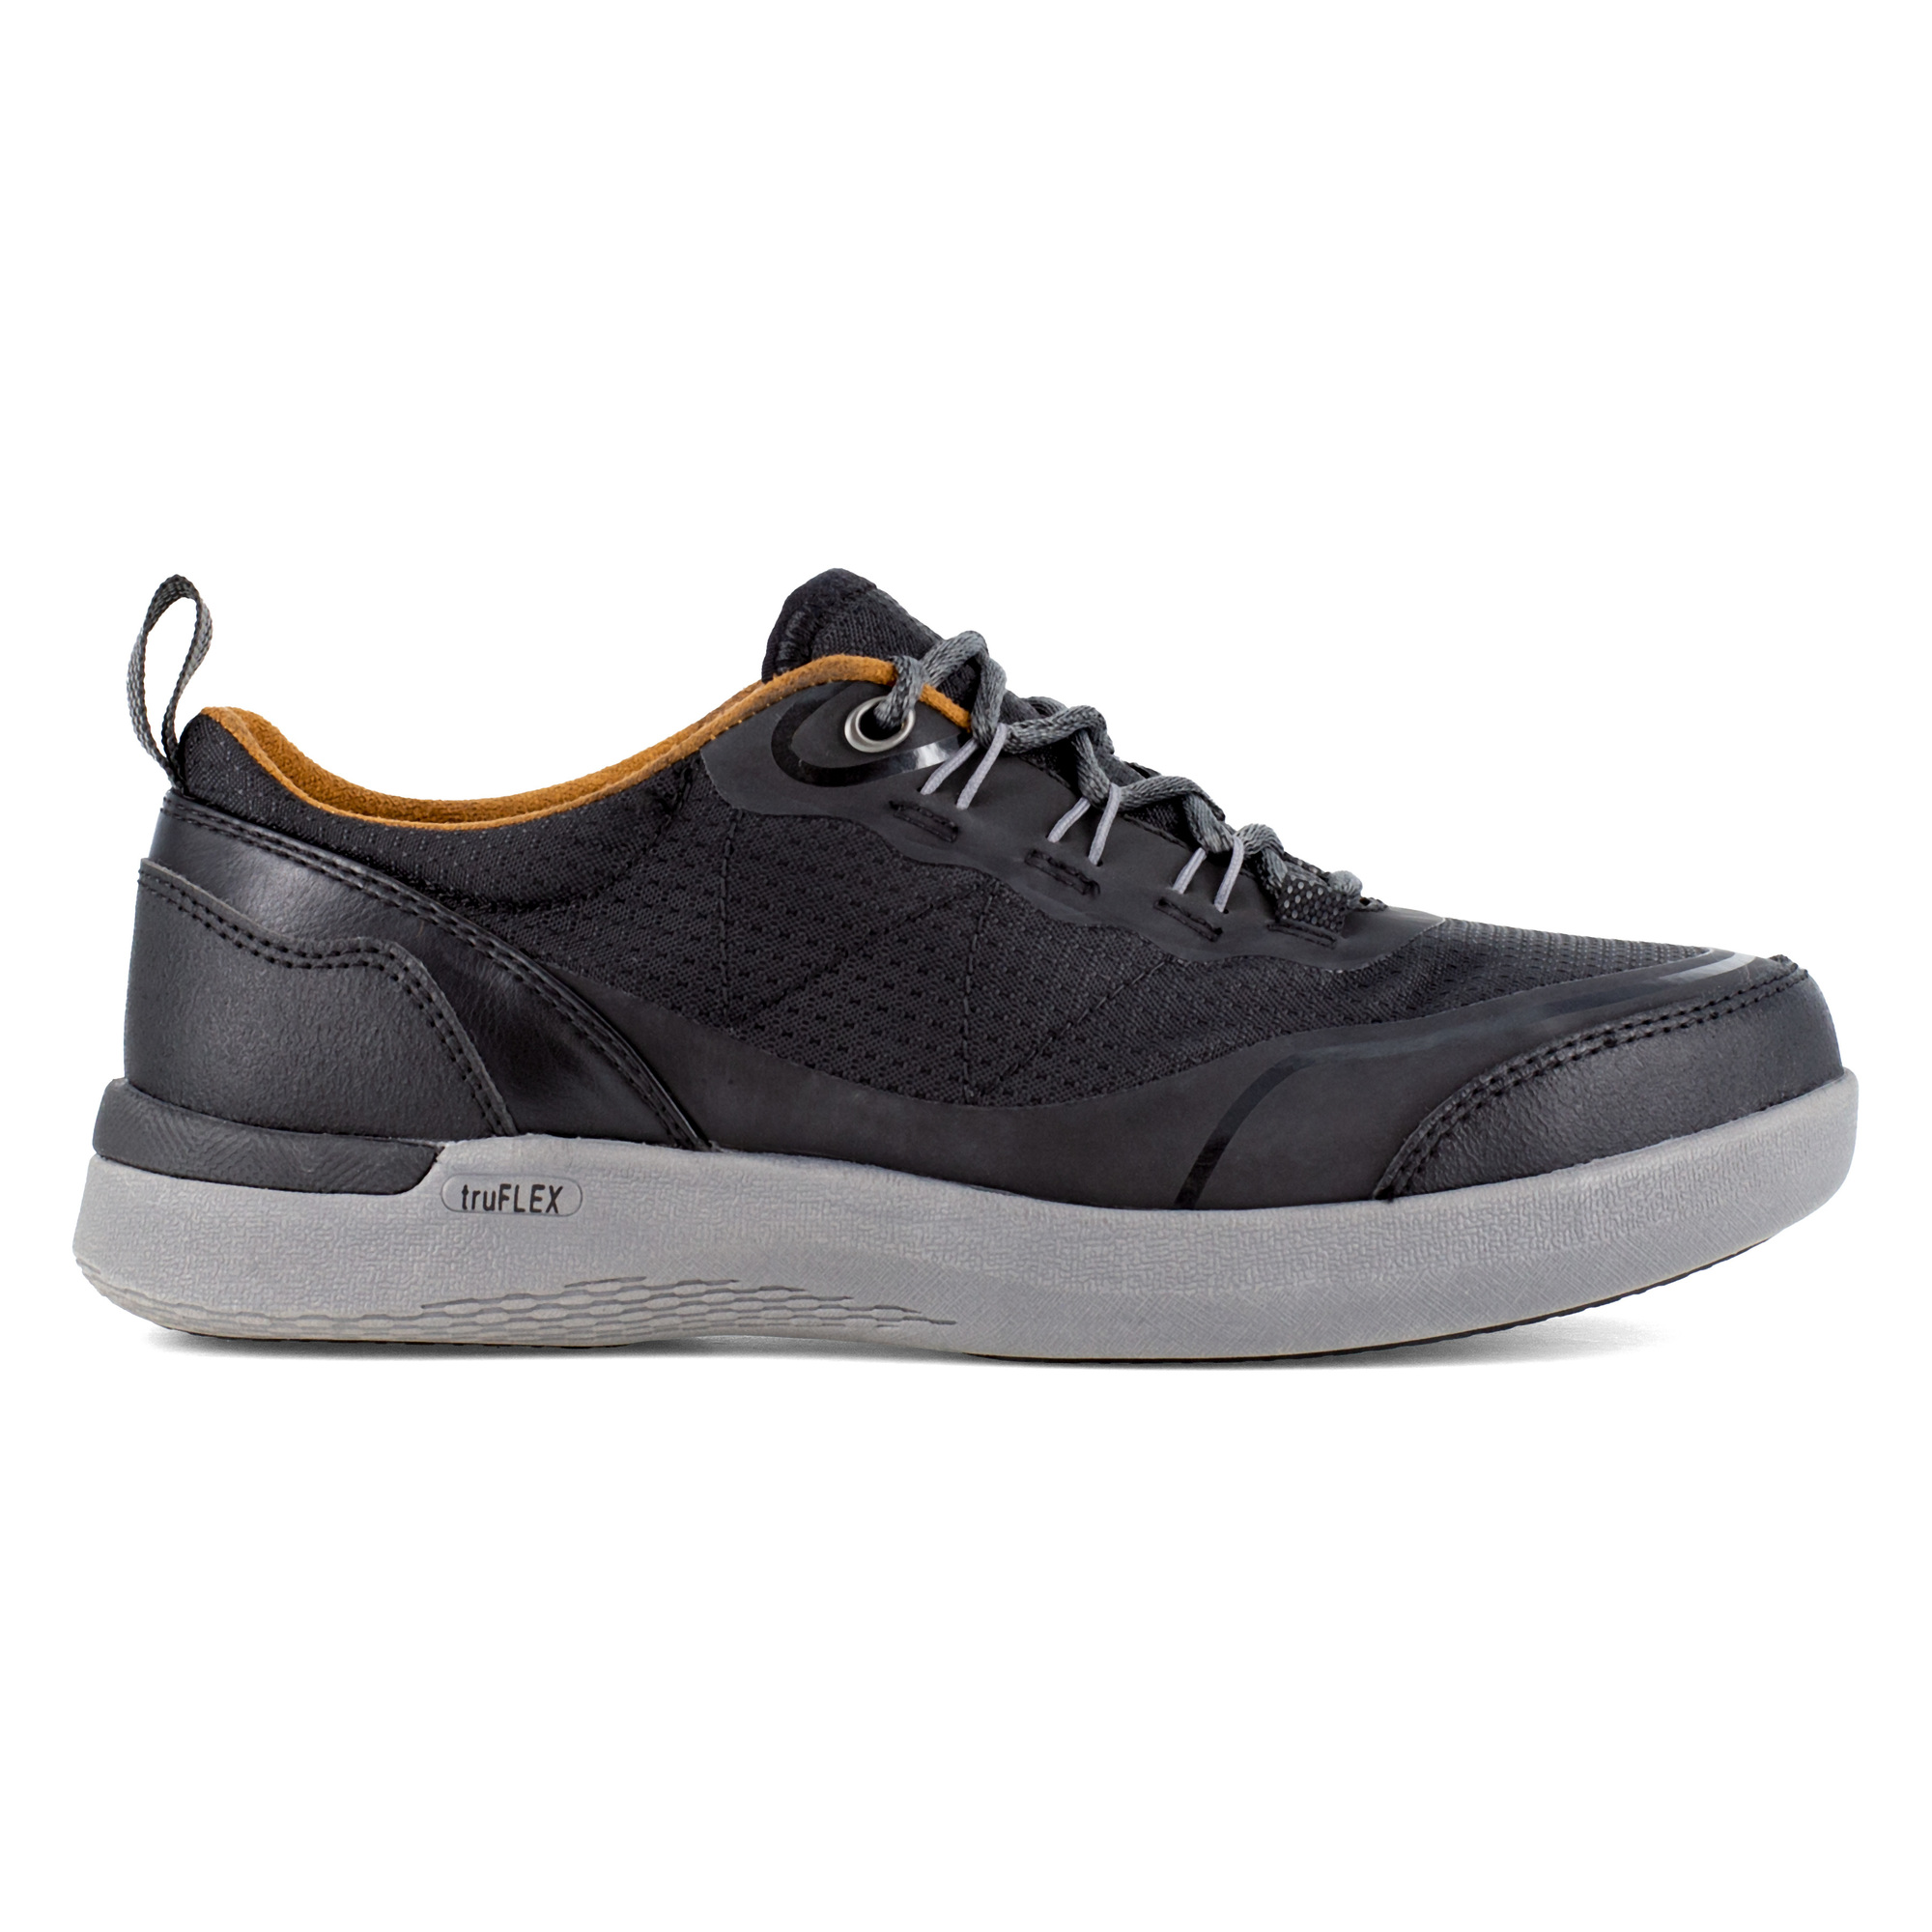 Rockport Works, Work Sneaker, Size 6 1/2, Width Wide, Color Black, Model RK687